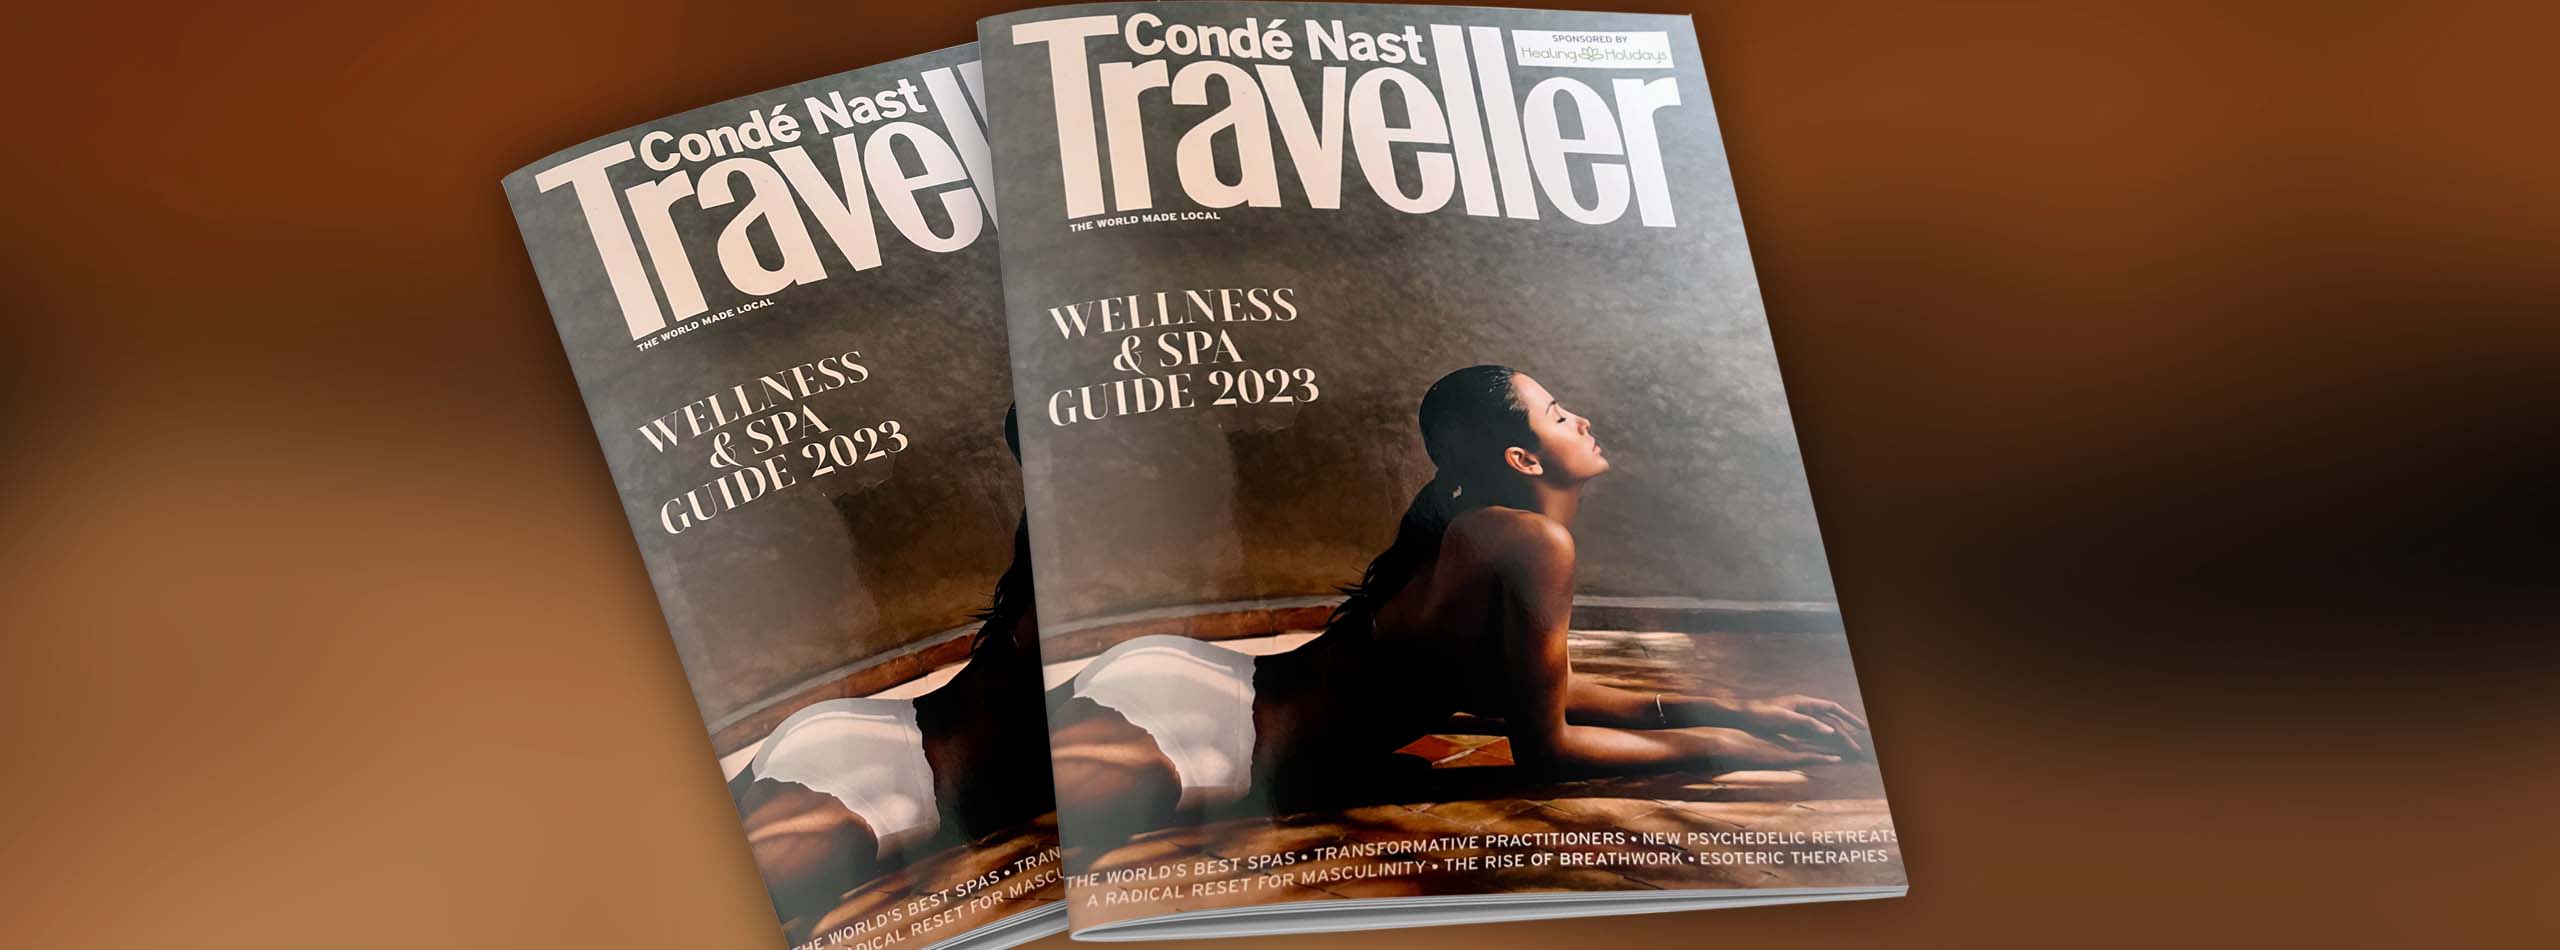 Condé Nast Traveller Wellness & Spa Awards 2023